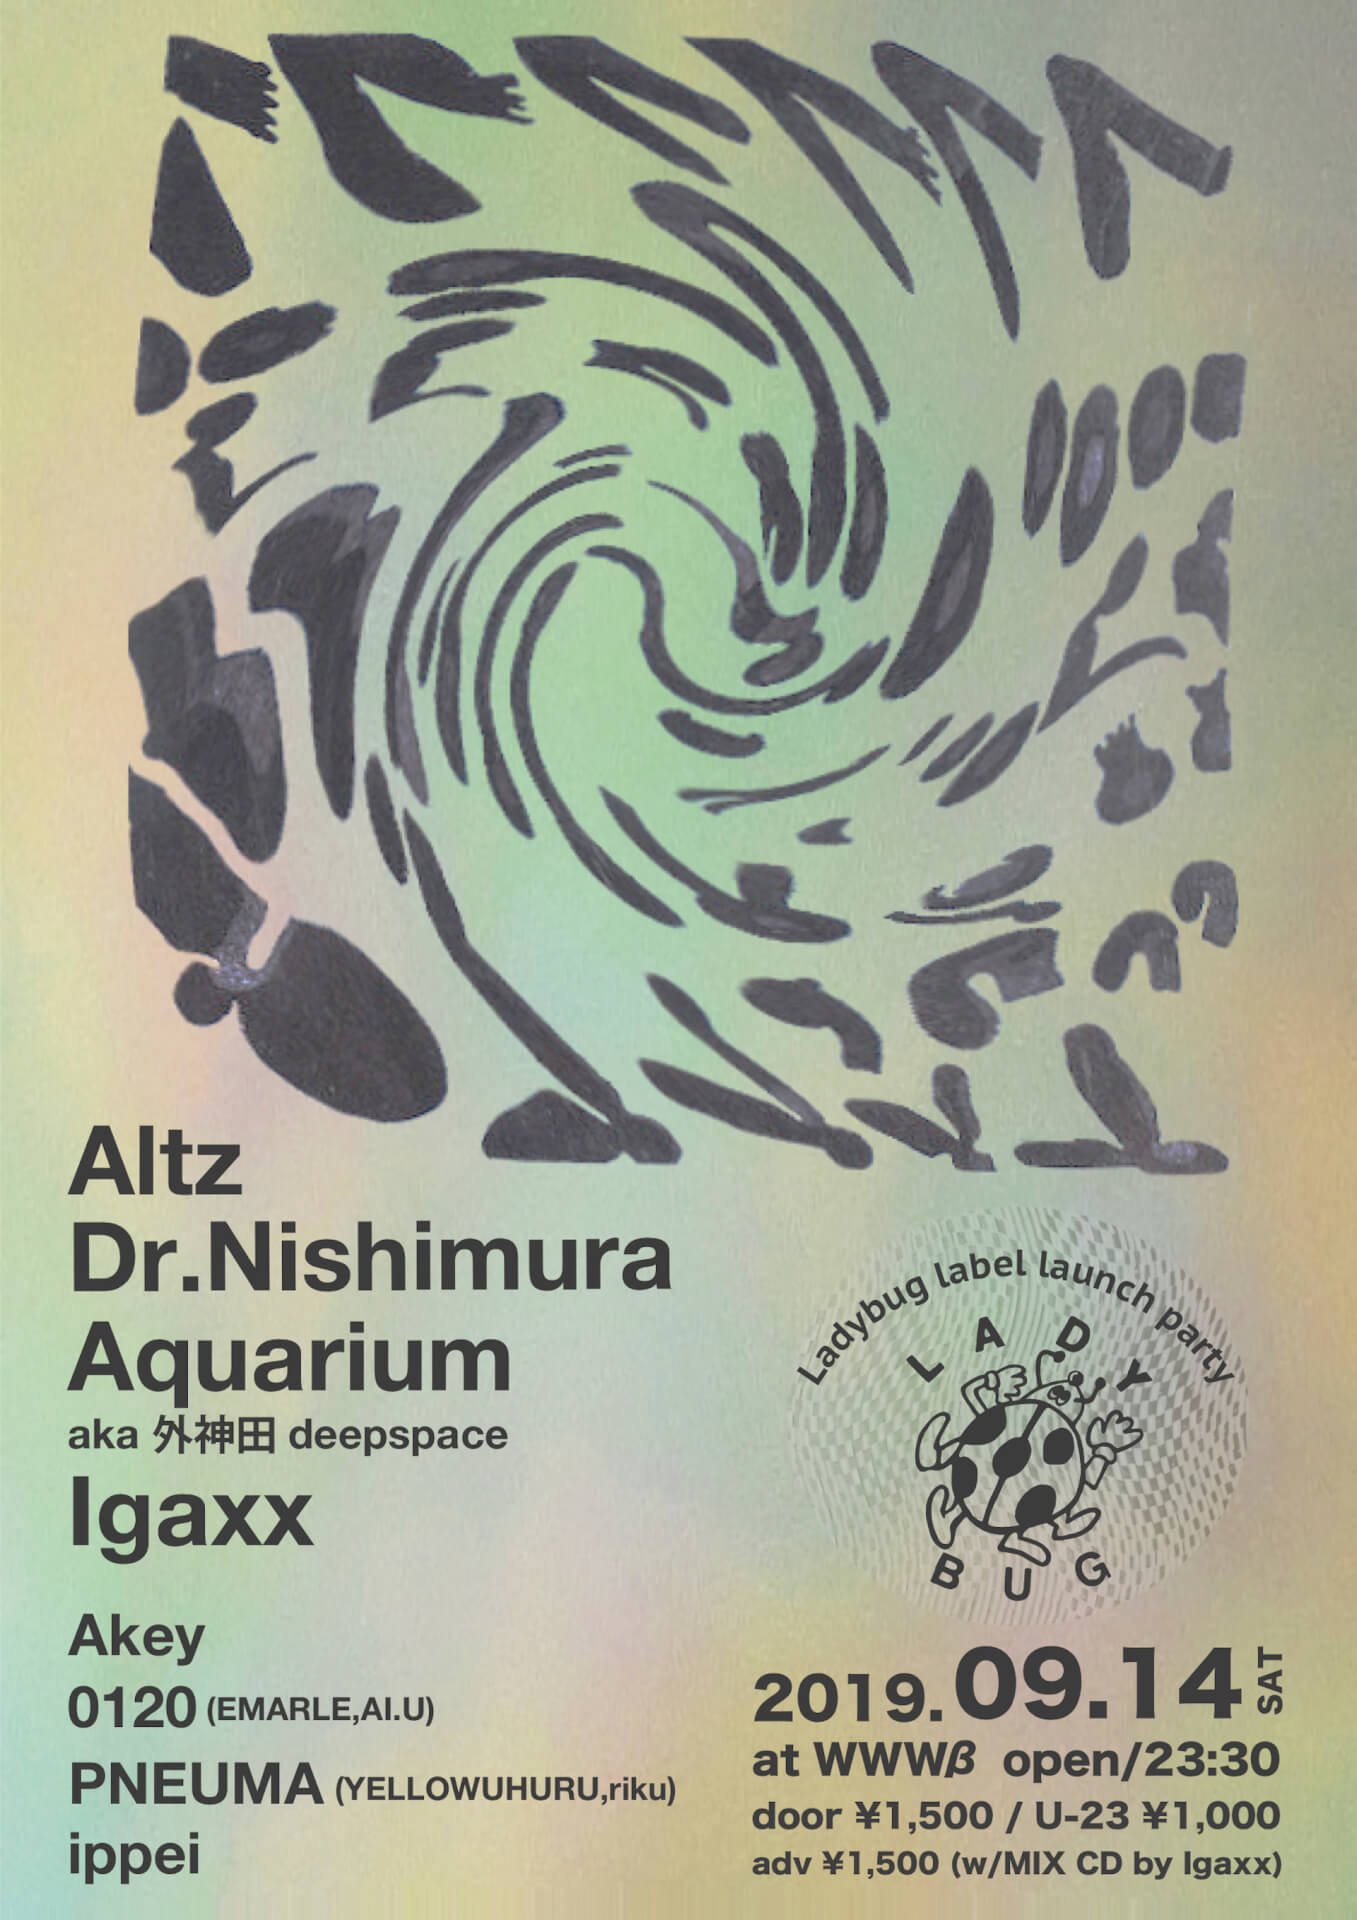 日本発の新興ハウスレーベル〈Ladybug〉ローンチパーティーが9月にWWWβで開催｜ALTZ、IGAXX、Dr.Nishimura、Aquarium aka 外神田deepspaceらが登場 music190812-ladybug-4